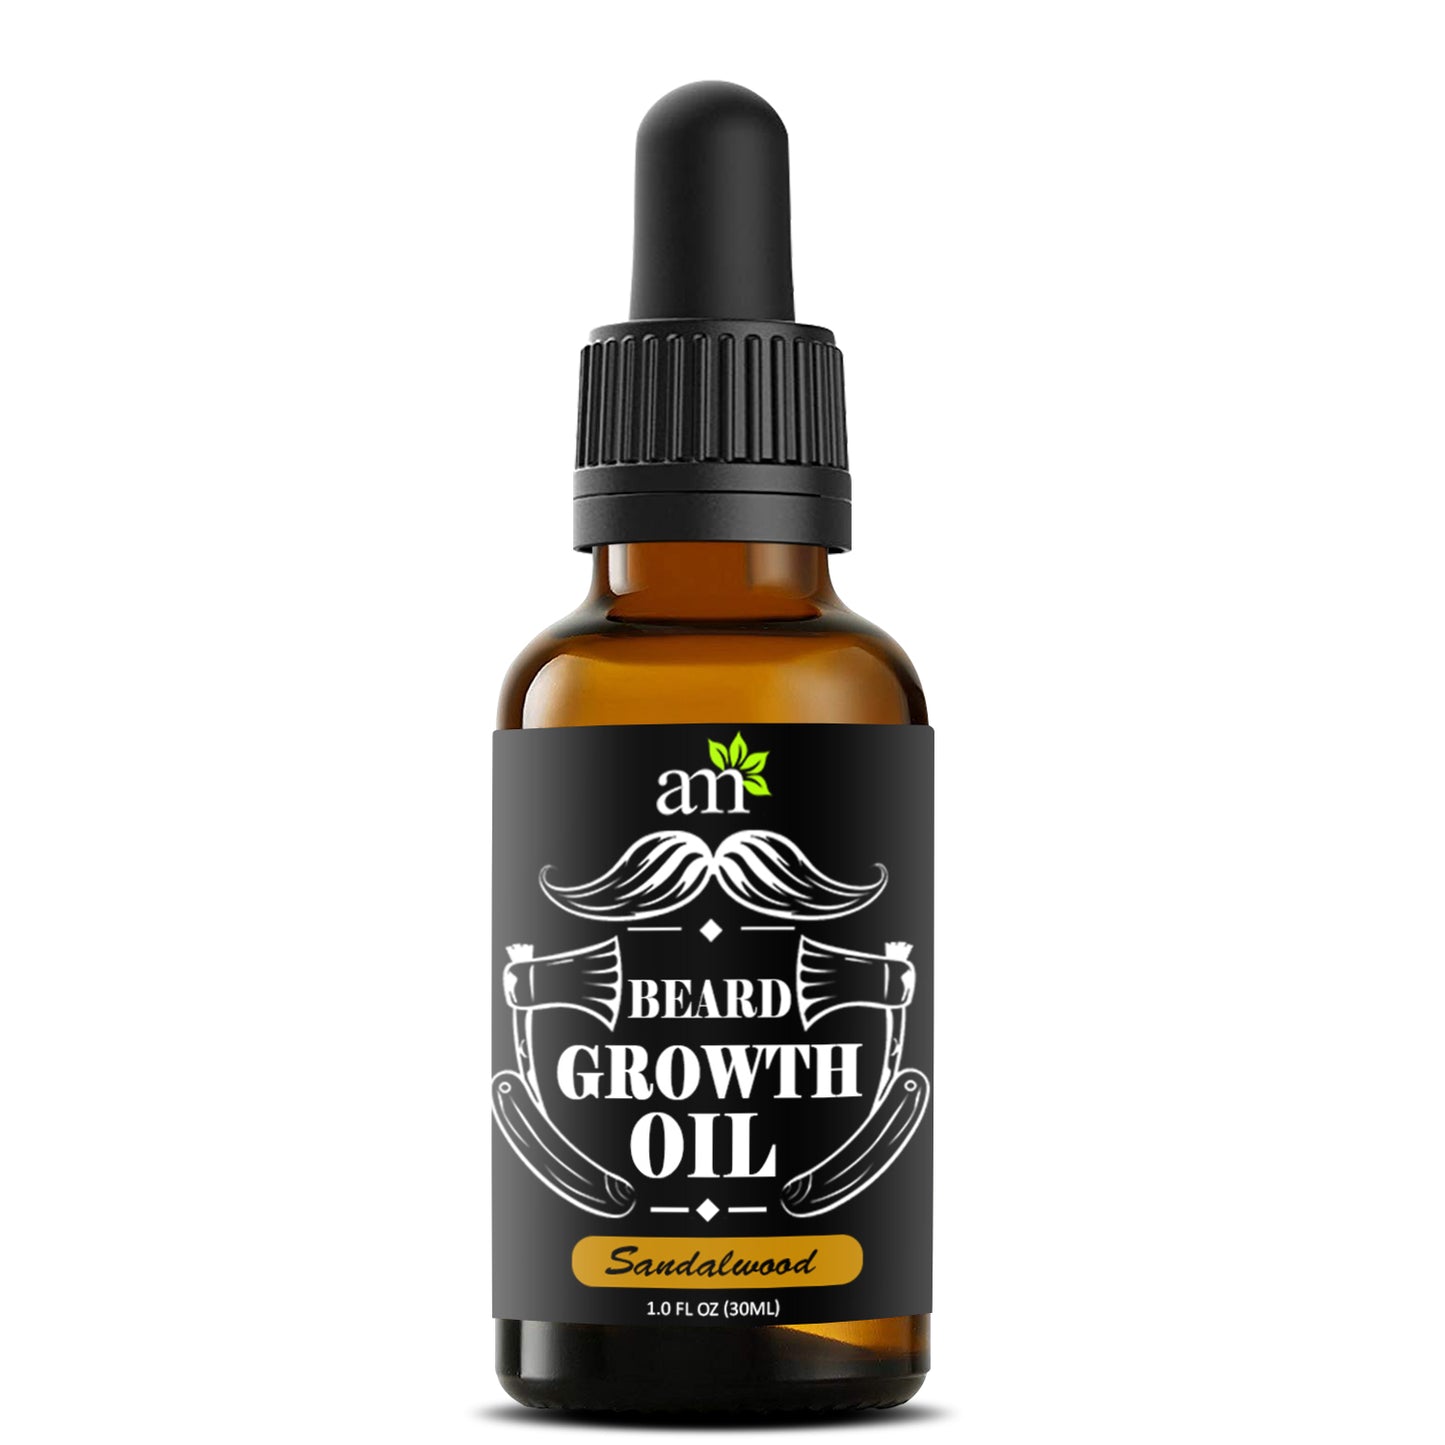 100% Natural Beard & Hair Growth Oil - Sandalwood, 30ml